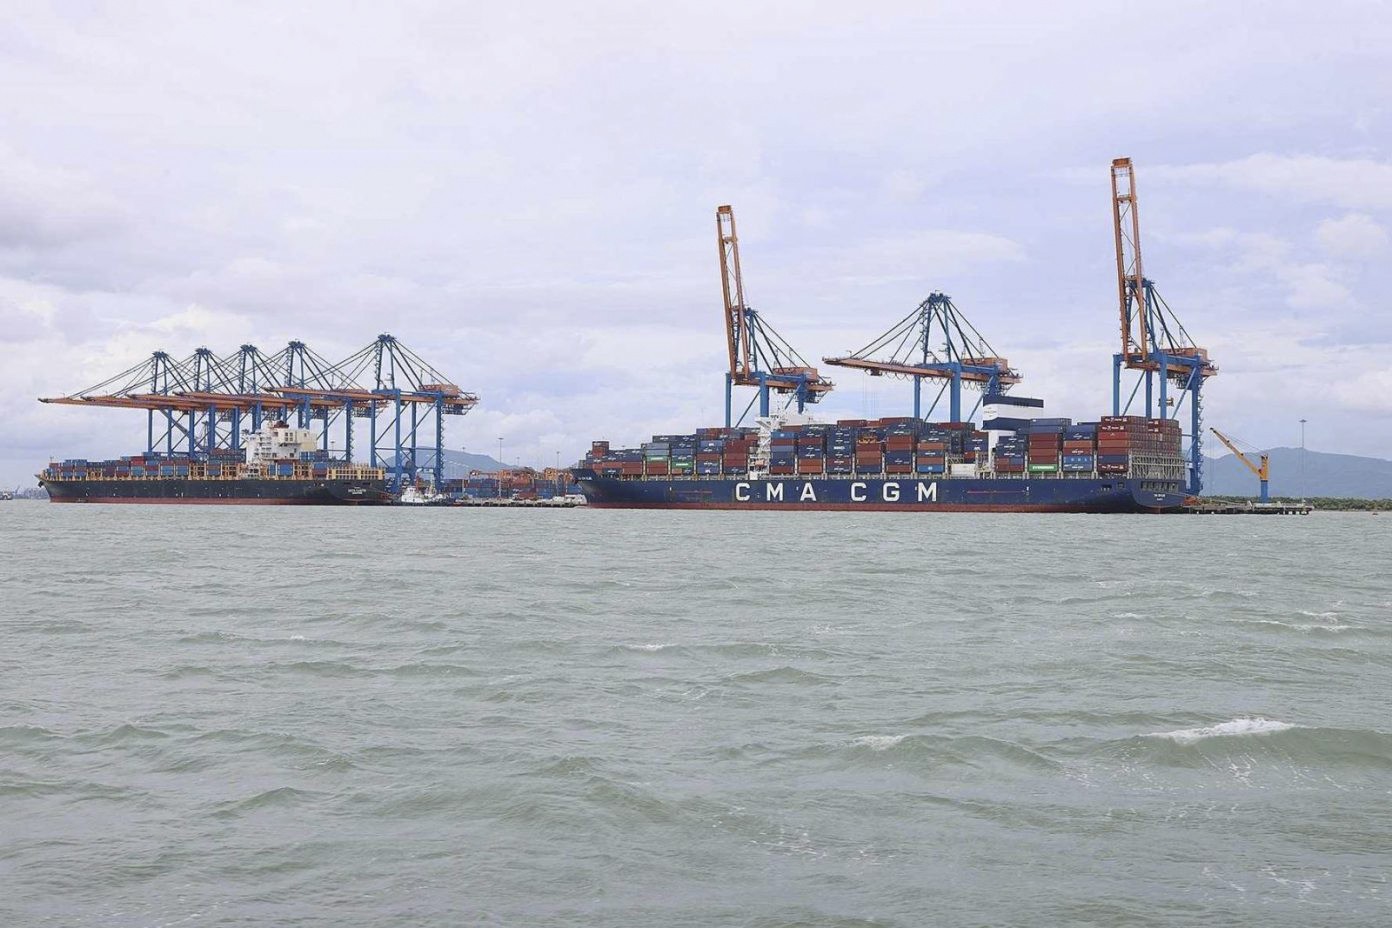 Đề án siêu cảng 5,4 tỷ USD ở Cần Giờ: Cân nhắc hài hòa lợi ích - Ảnh 2.